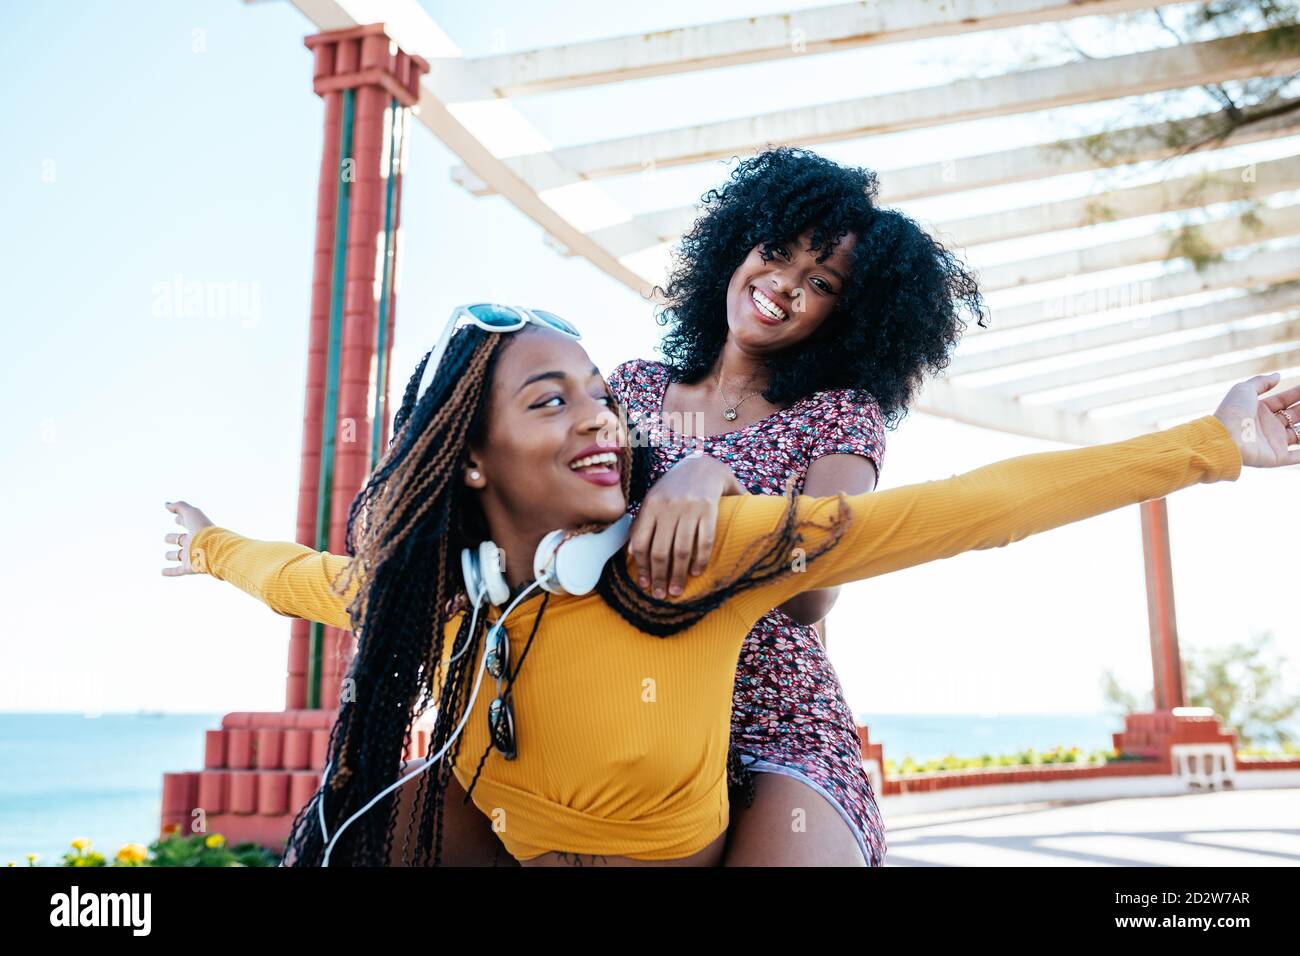 Une femme ethnique gaie aux cheveux bouclés a ravie une amie avec des tresses tout en s'amusant sur la promenade le week-end en été Banque D'Images